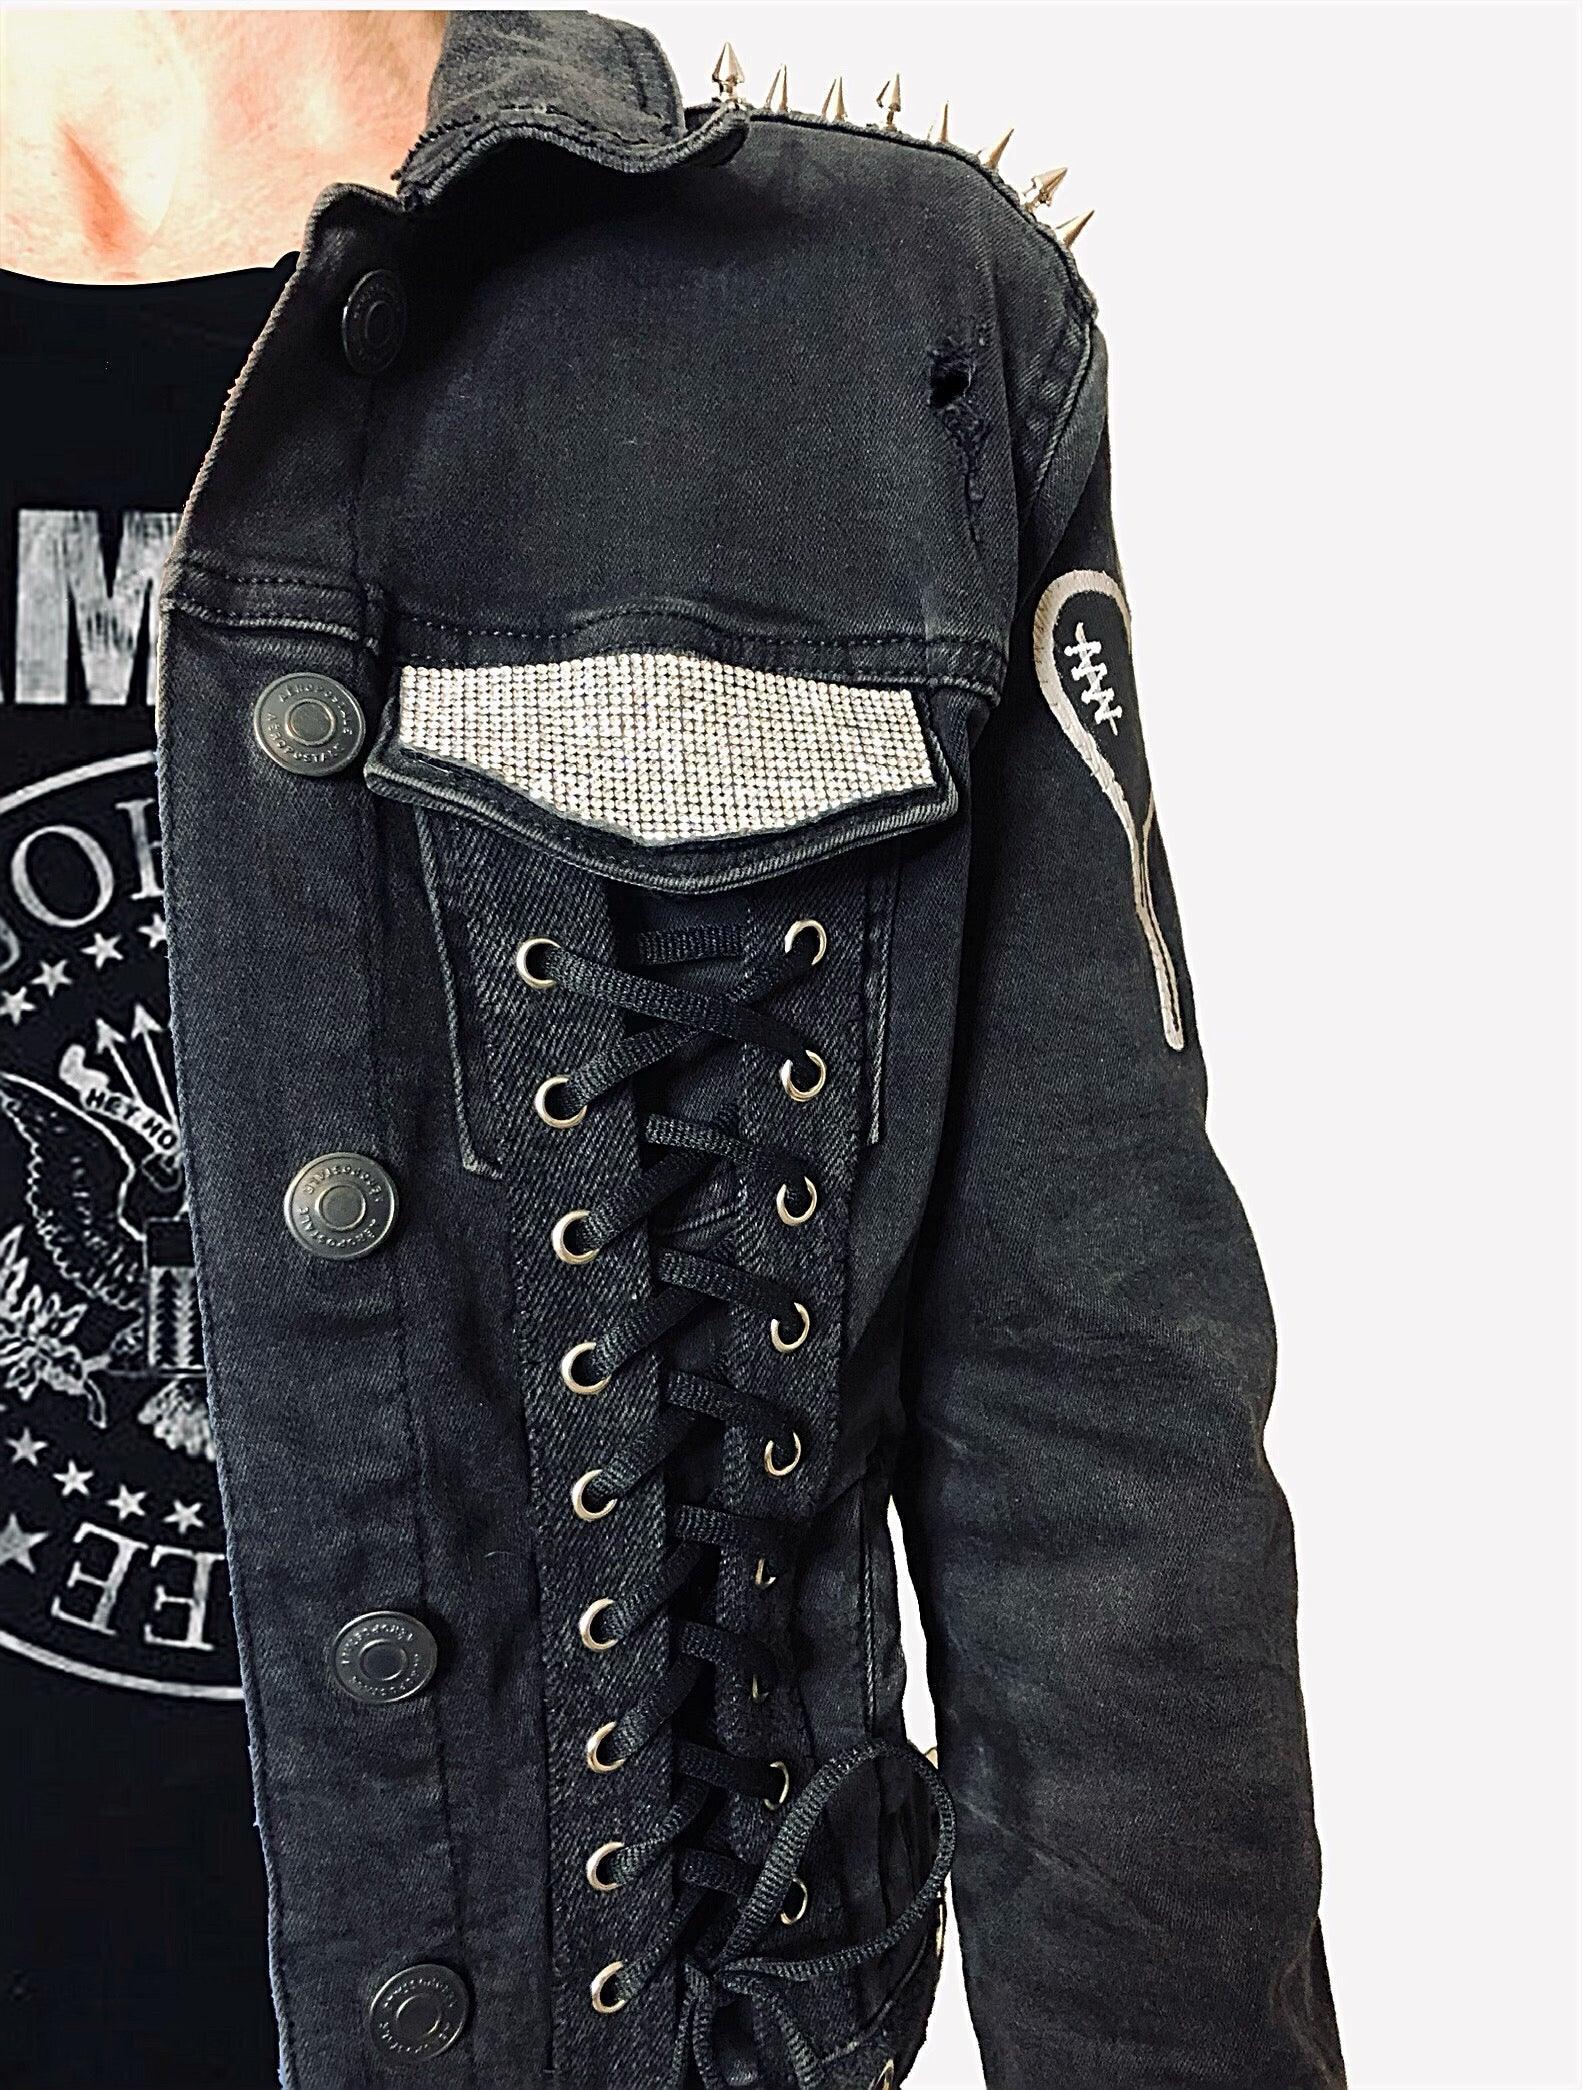 punk rock jacket